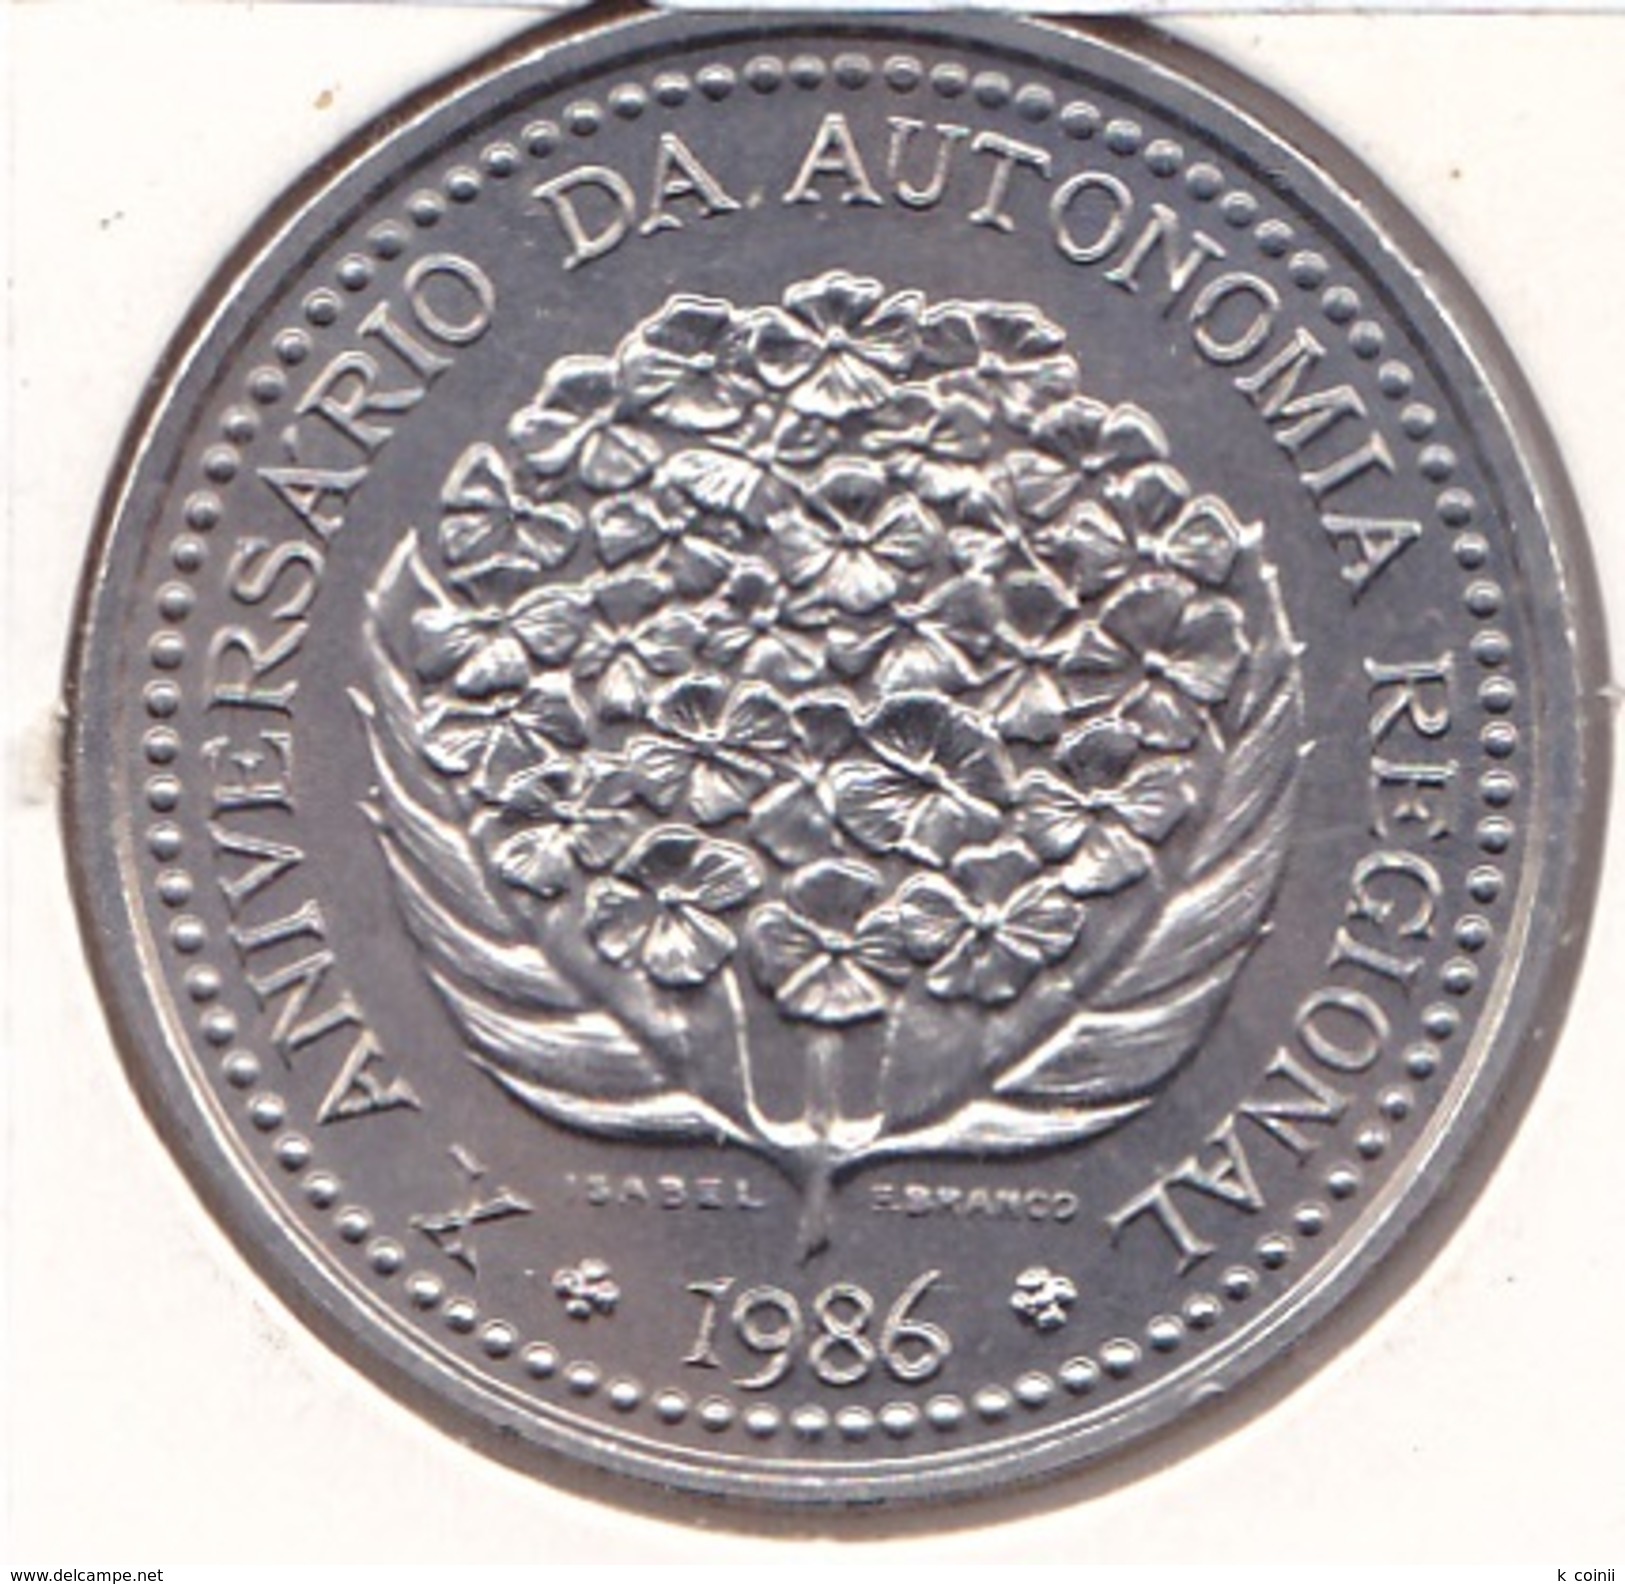 Azores - 100 Escudos (100$00) 1986 - UNC - Portugal